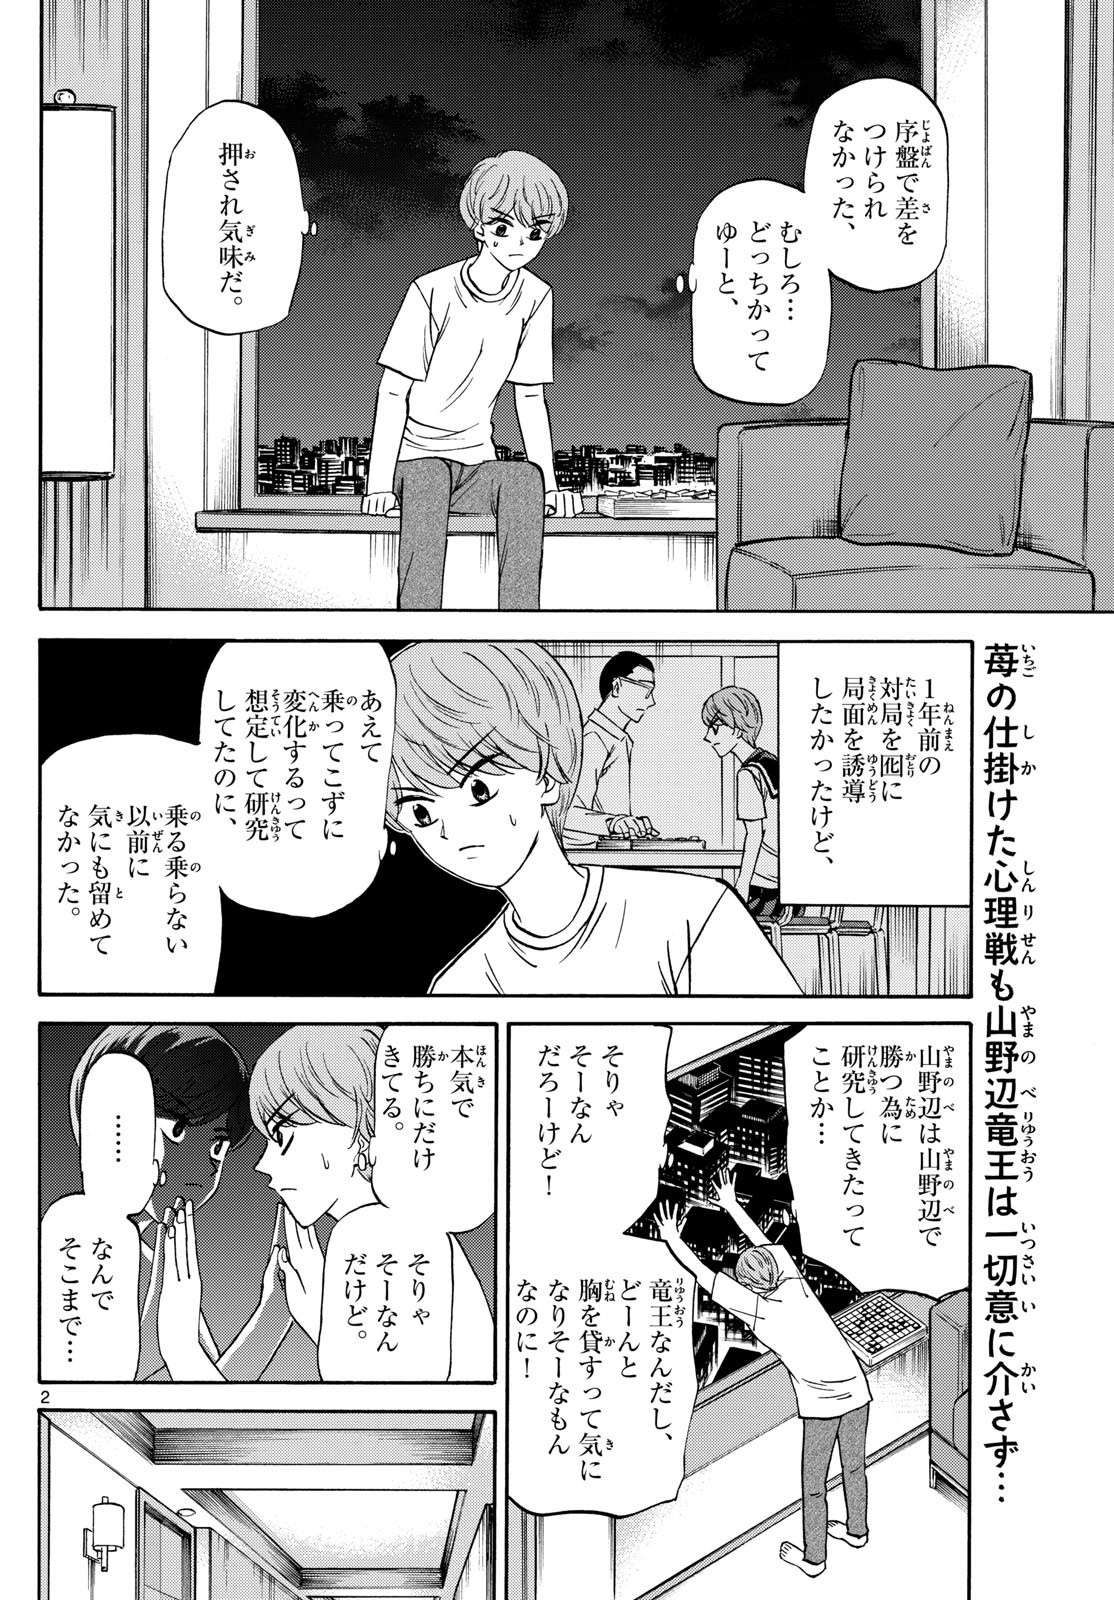 Ryu-to-Ichigo - Chapter 155 - Page 2